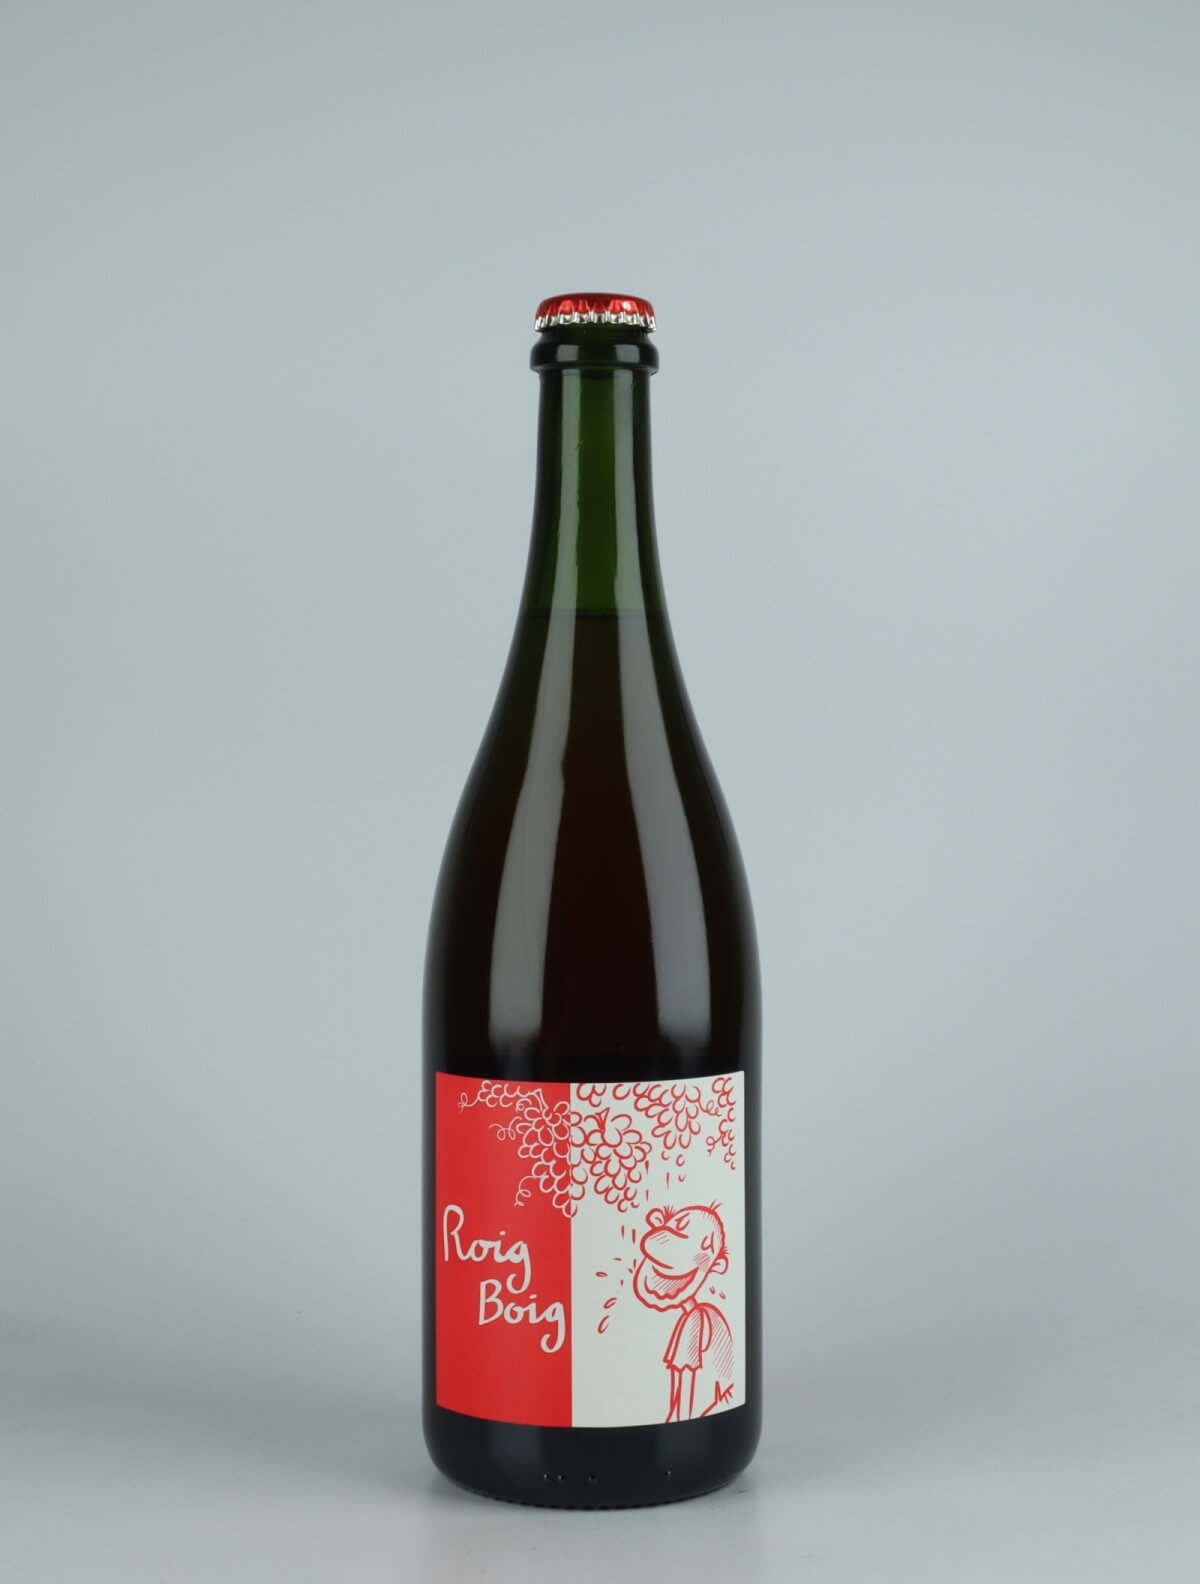 En flaske 2021 Roig Boig - Ancestral Mousserende fra Celler la Salada, Penedès i Spanien